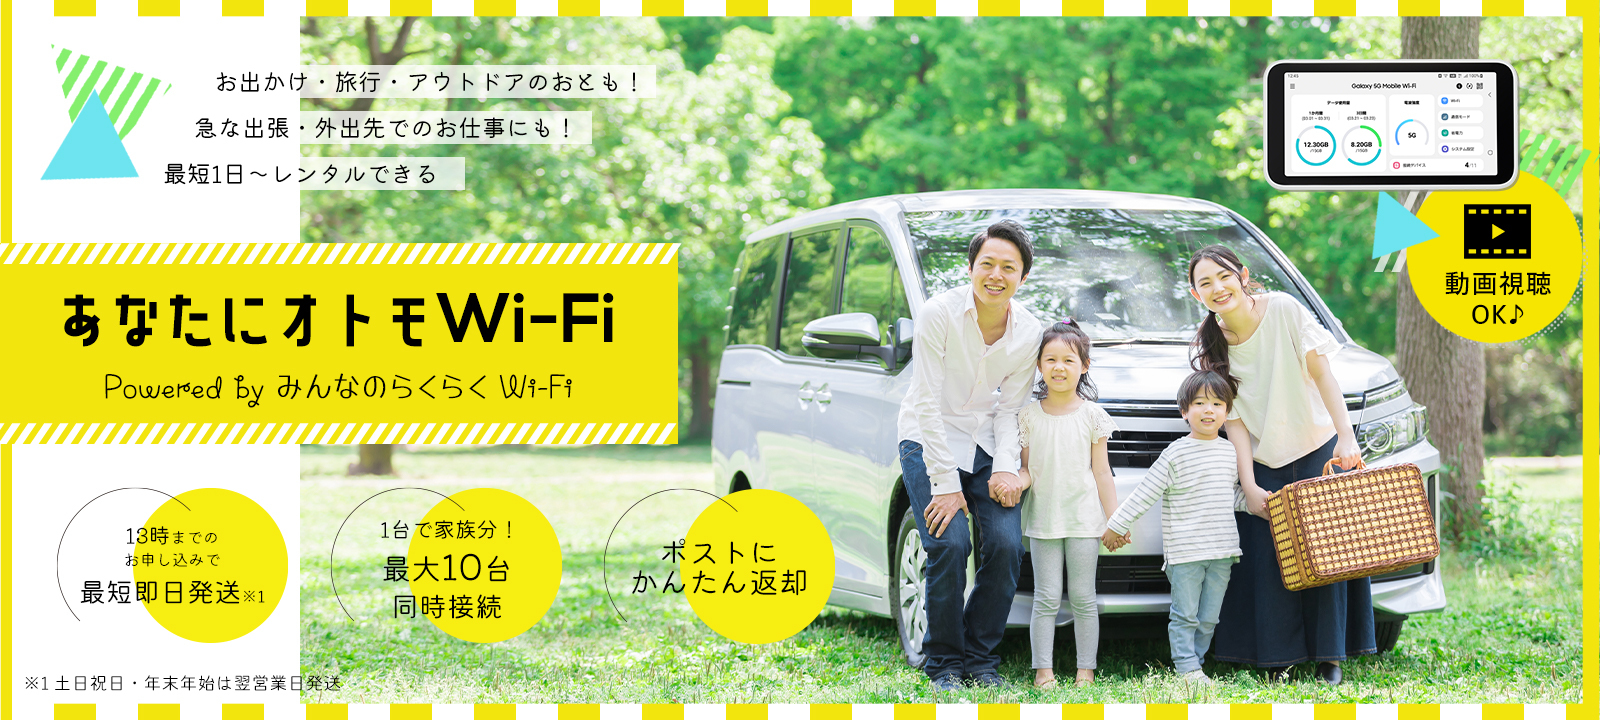 あなたにオトモWi-Fi みんなのらくらくwifi WiMAX 5G レンタル wifi